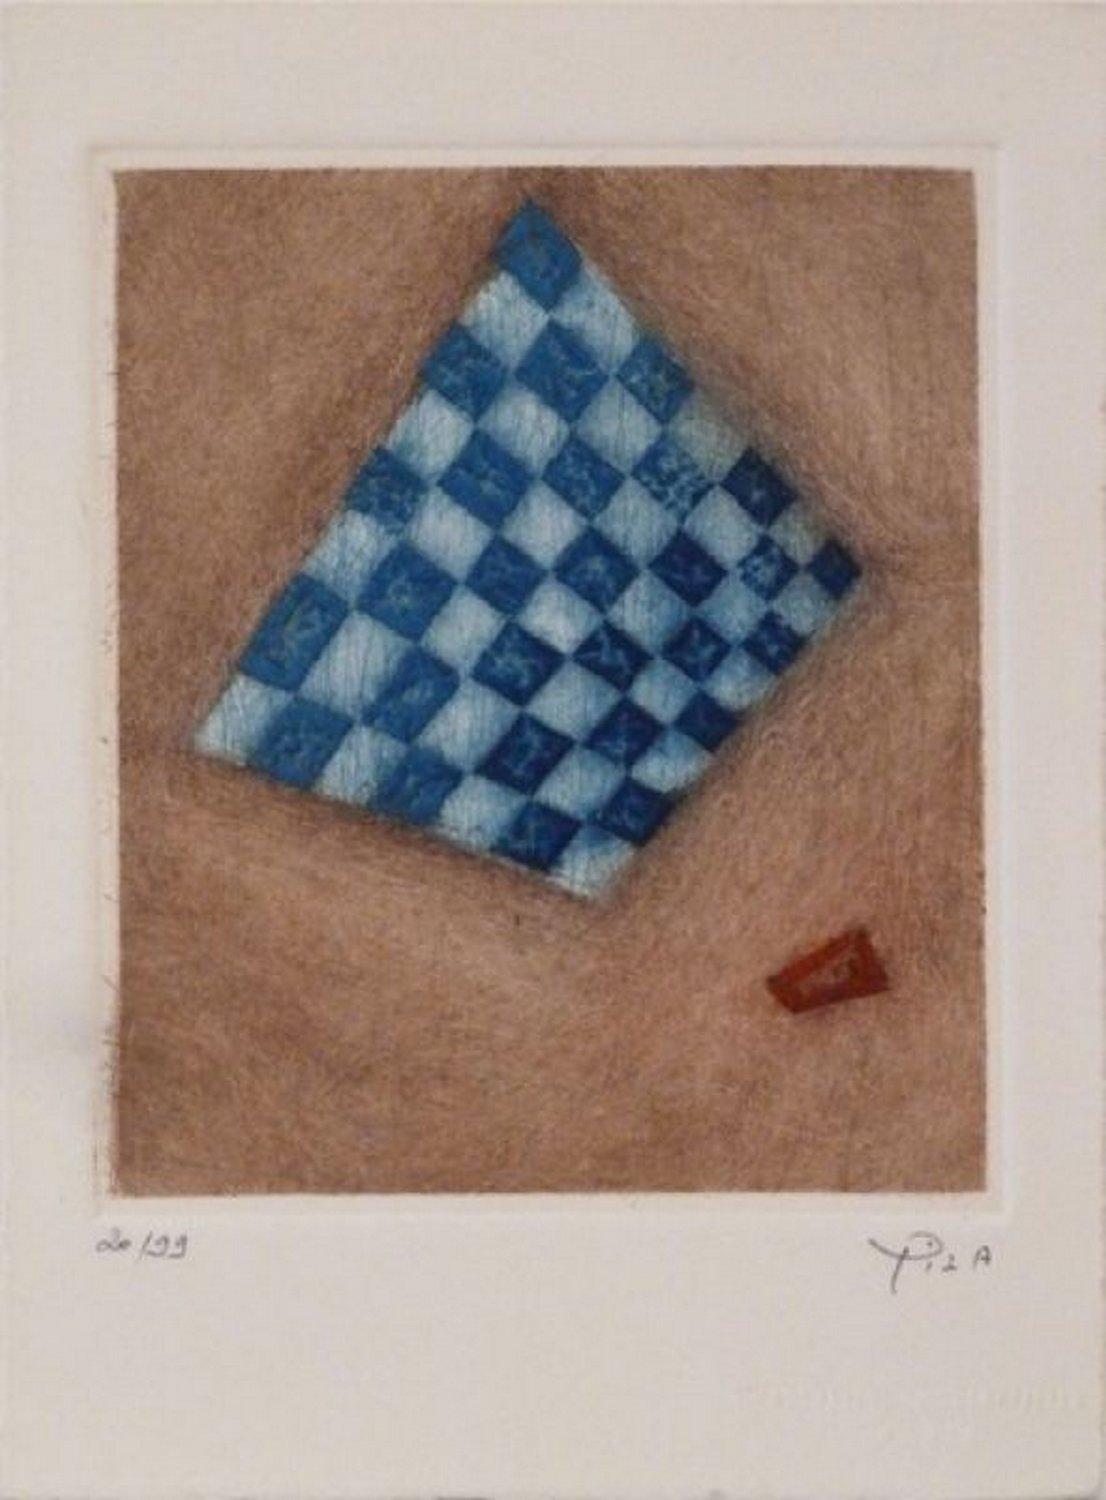 Arthur Luiz Piza Abstract Print - "Damier Bleu" 